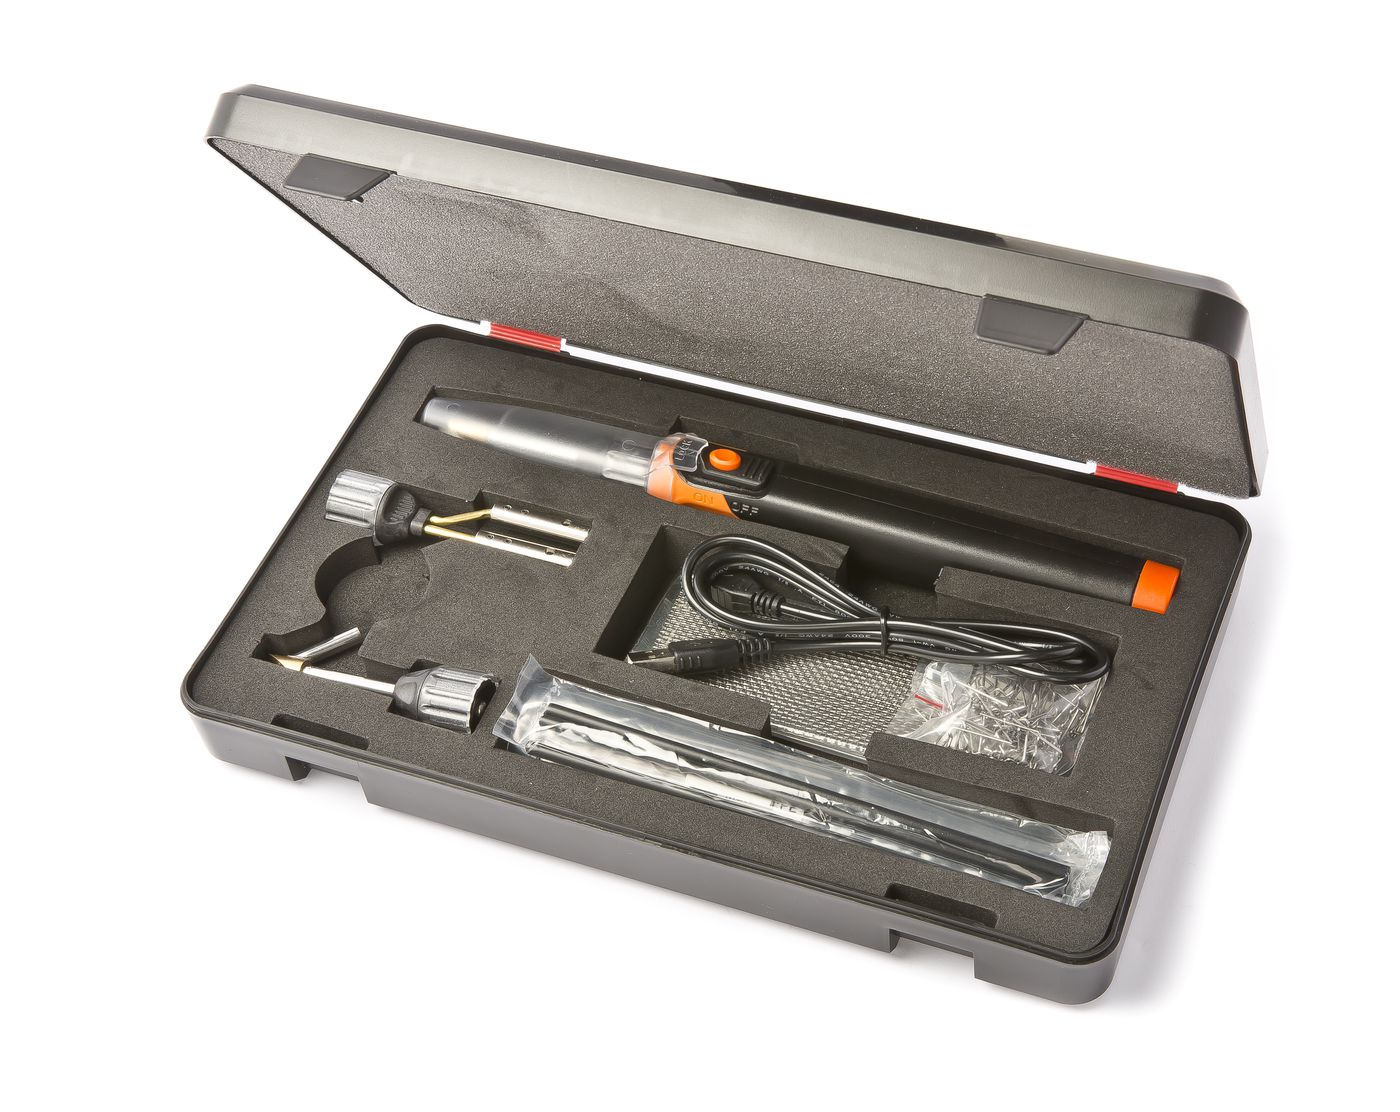 Kunststoff-Reparatursatz
Plastic Repair-Kit
Kit de réparation e